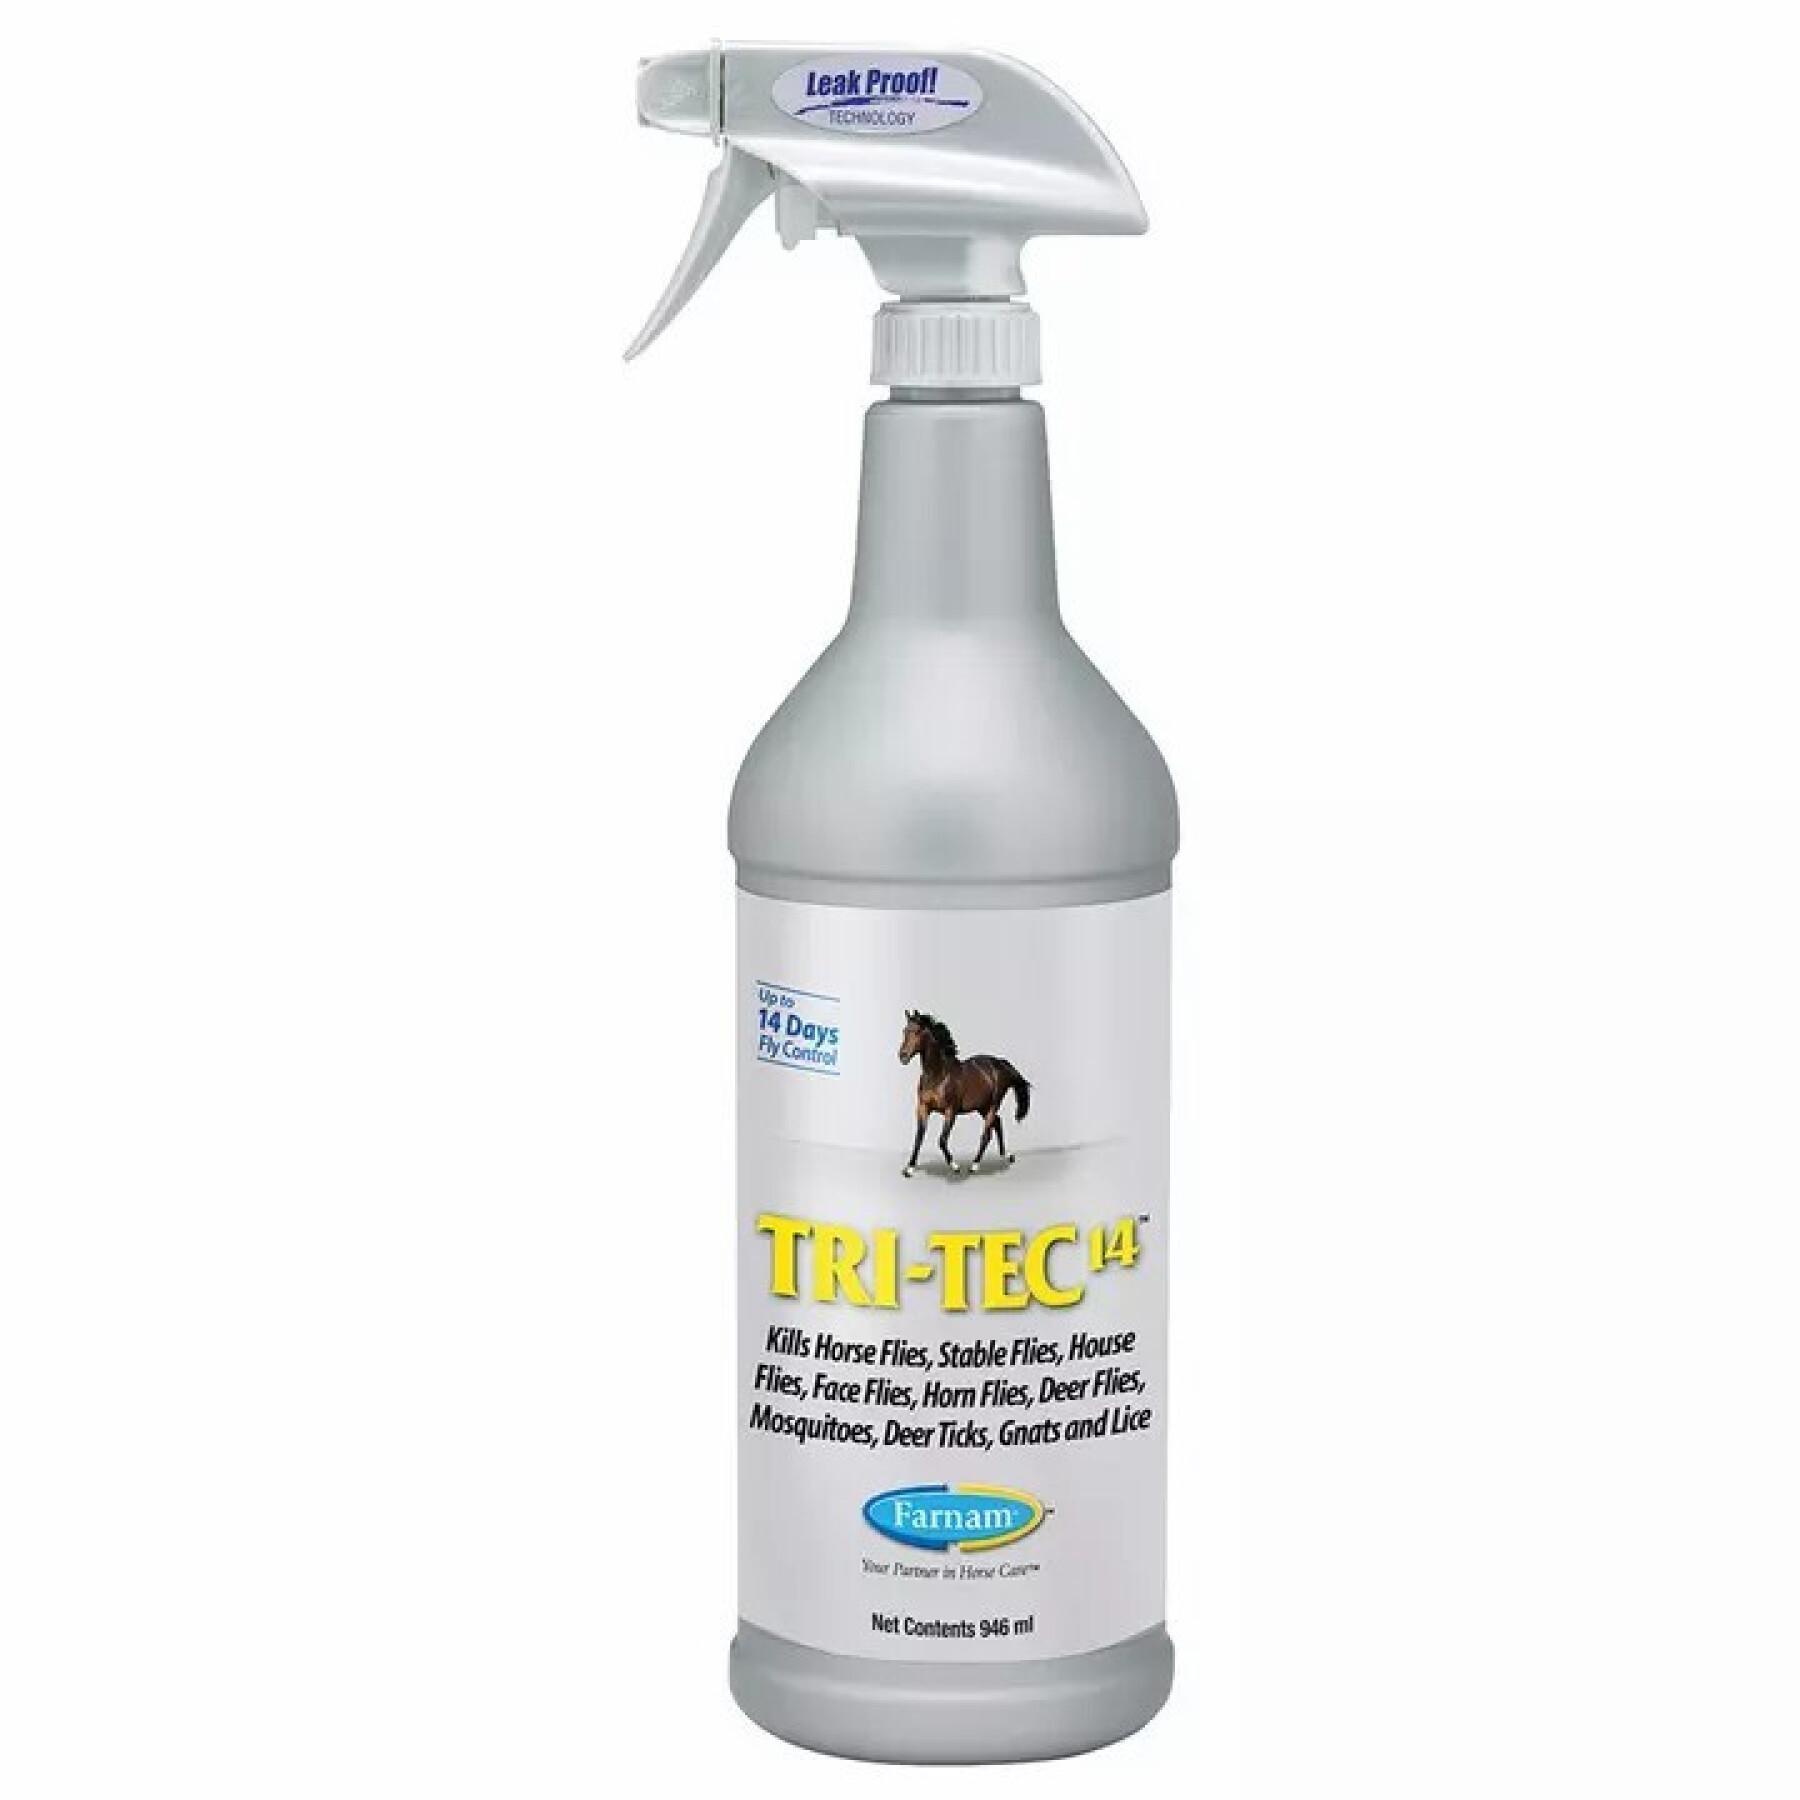 Spray anti-insectos para cavalos Farnam Tri Tec